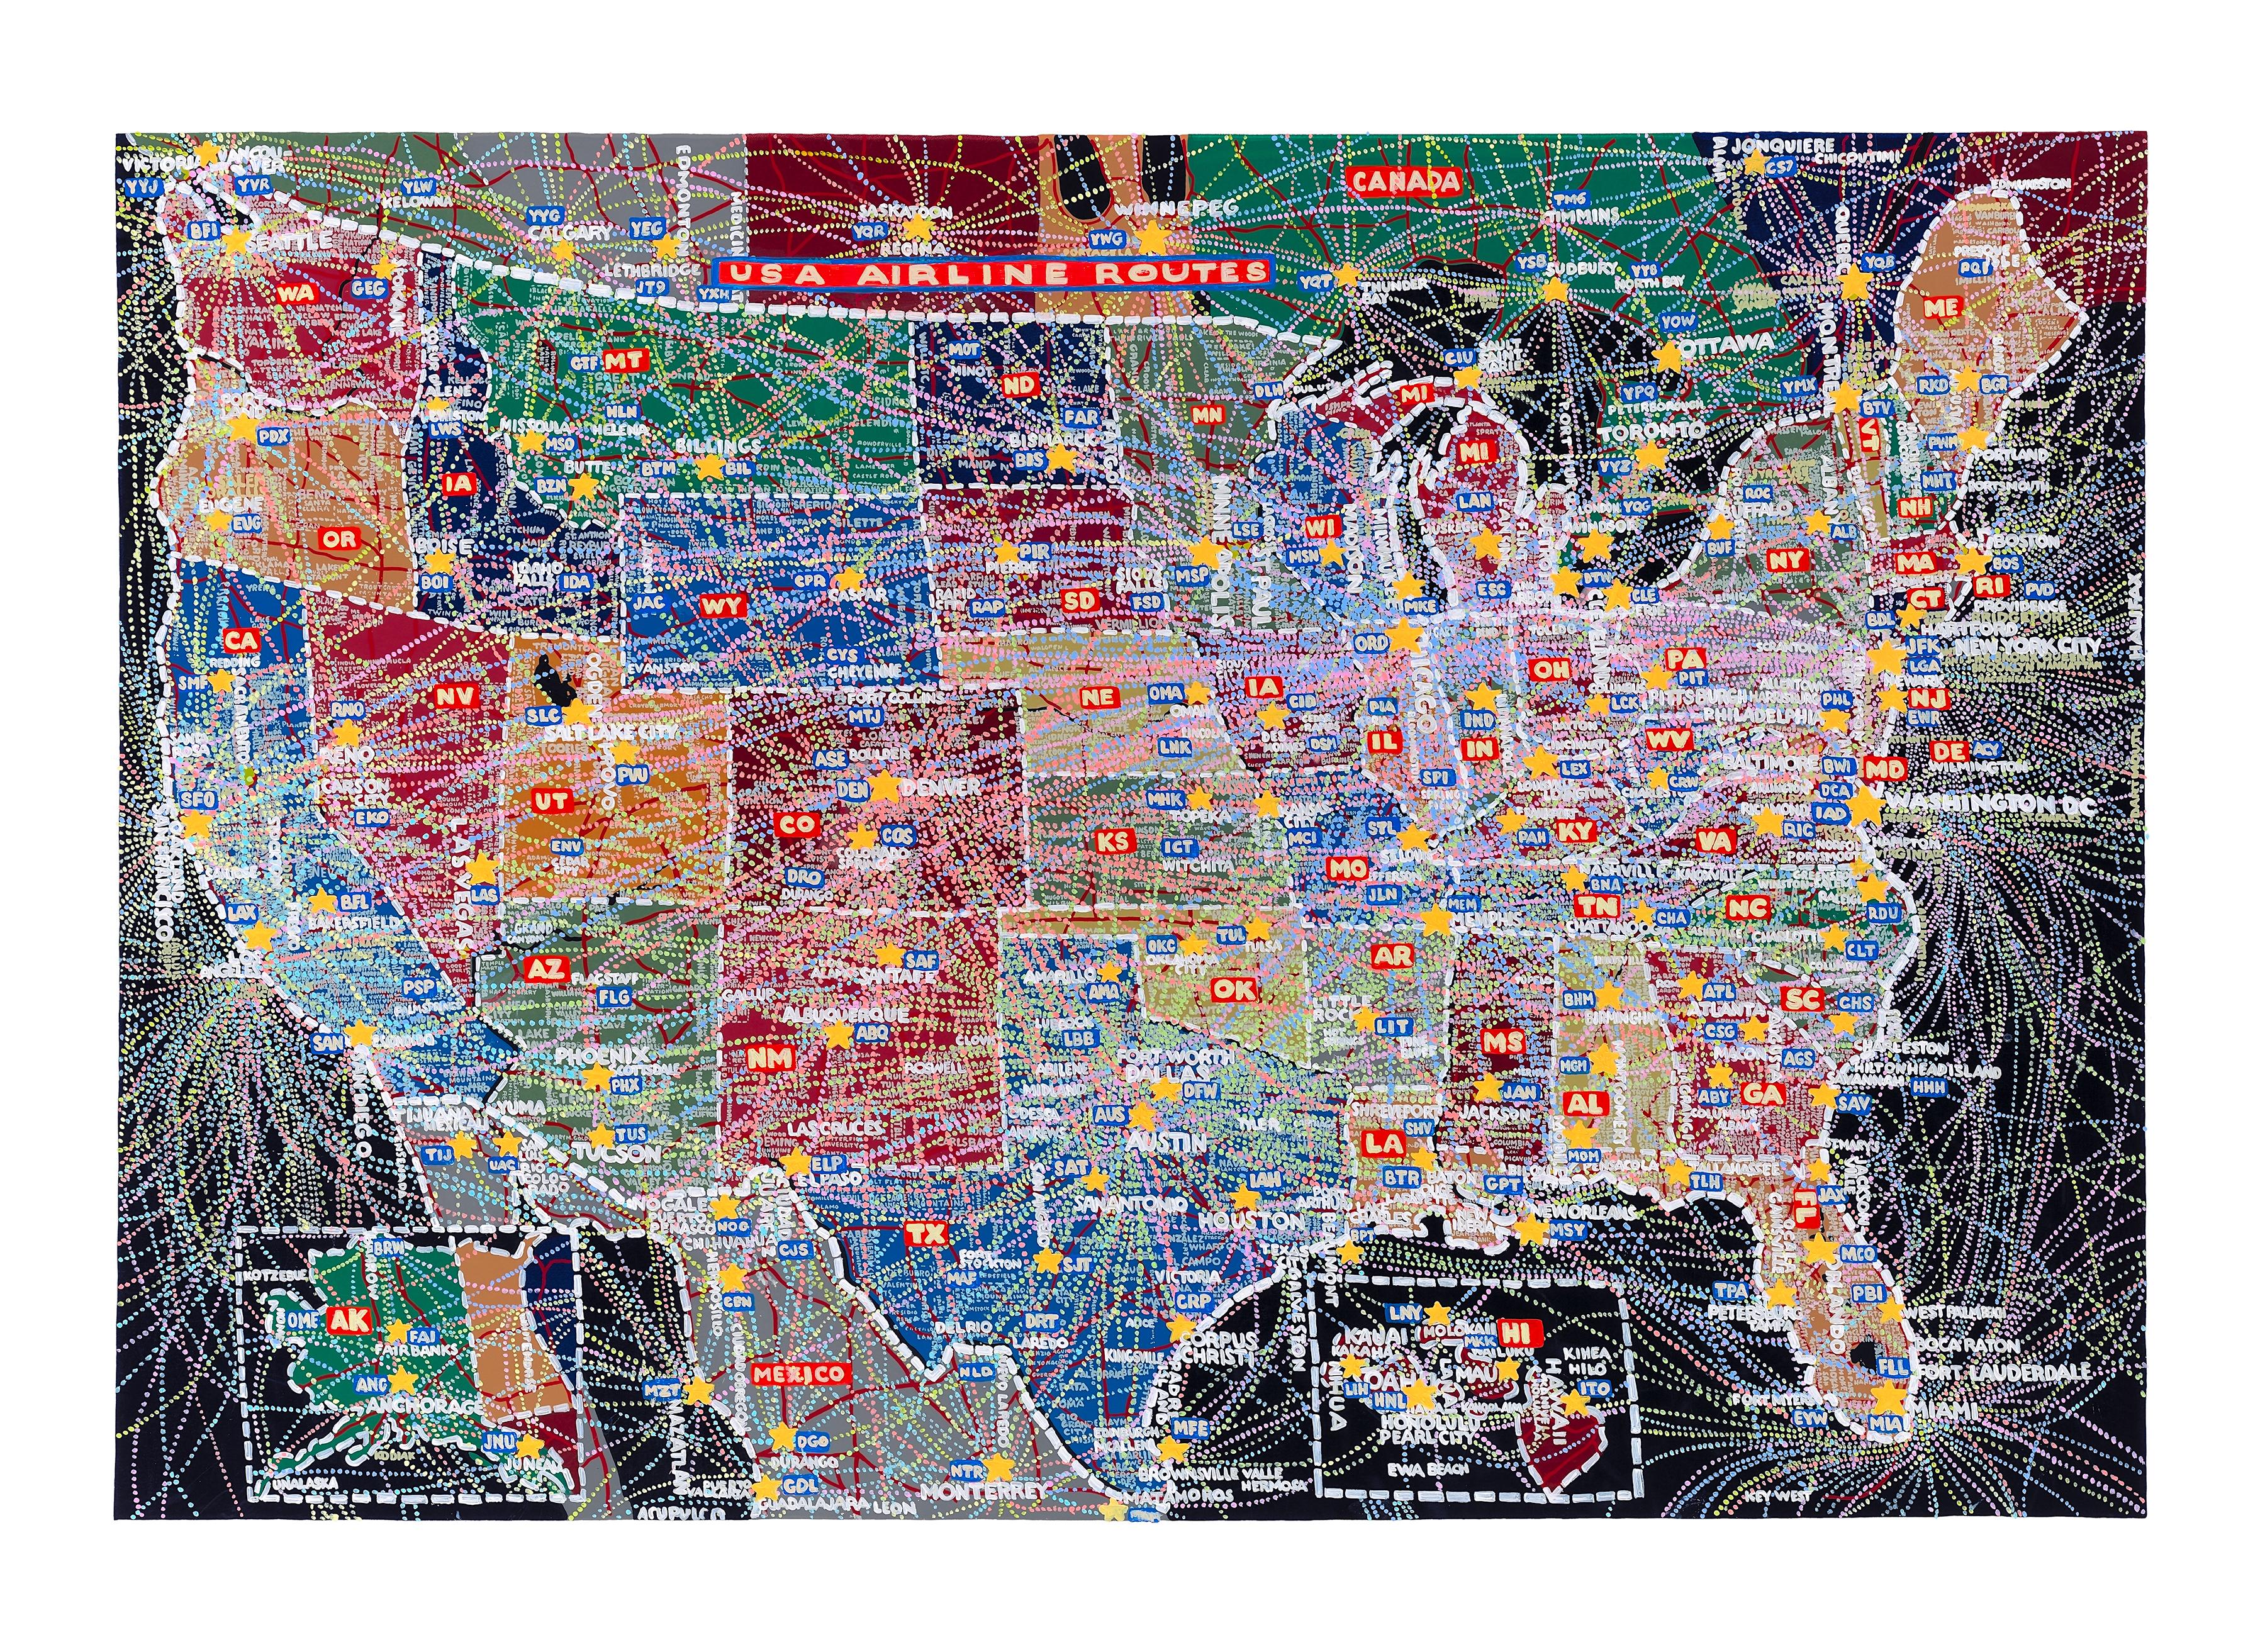 Abstract Print Paula Scher - Routes aériennes aux États-Unis